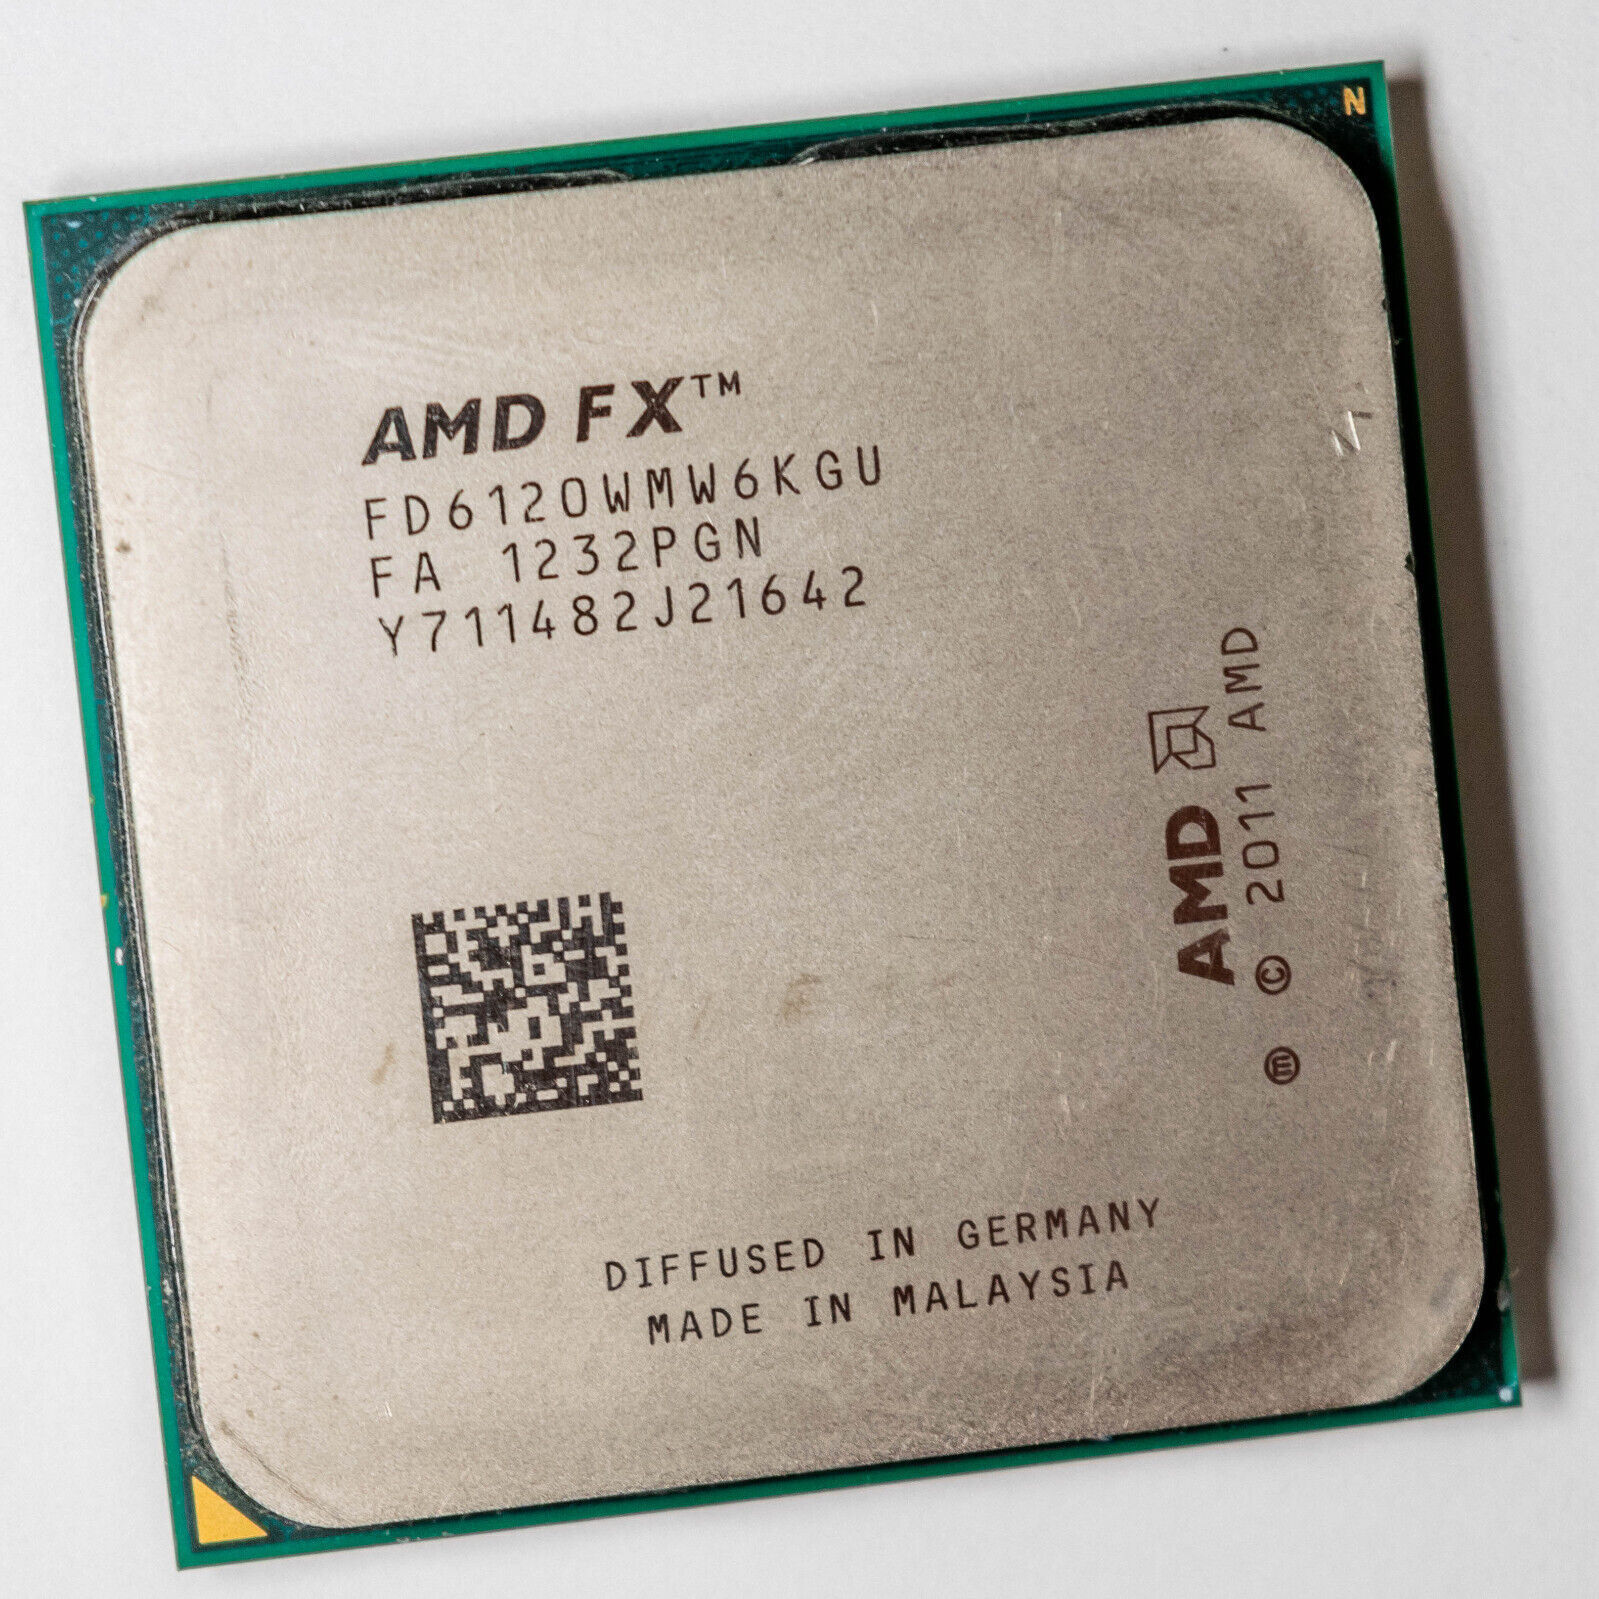 AMD FX-6120 Hexa Core Processor 3.5 - 4.1 GHz, 6MB Cache, Socket AM3+, 95W CPU